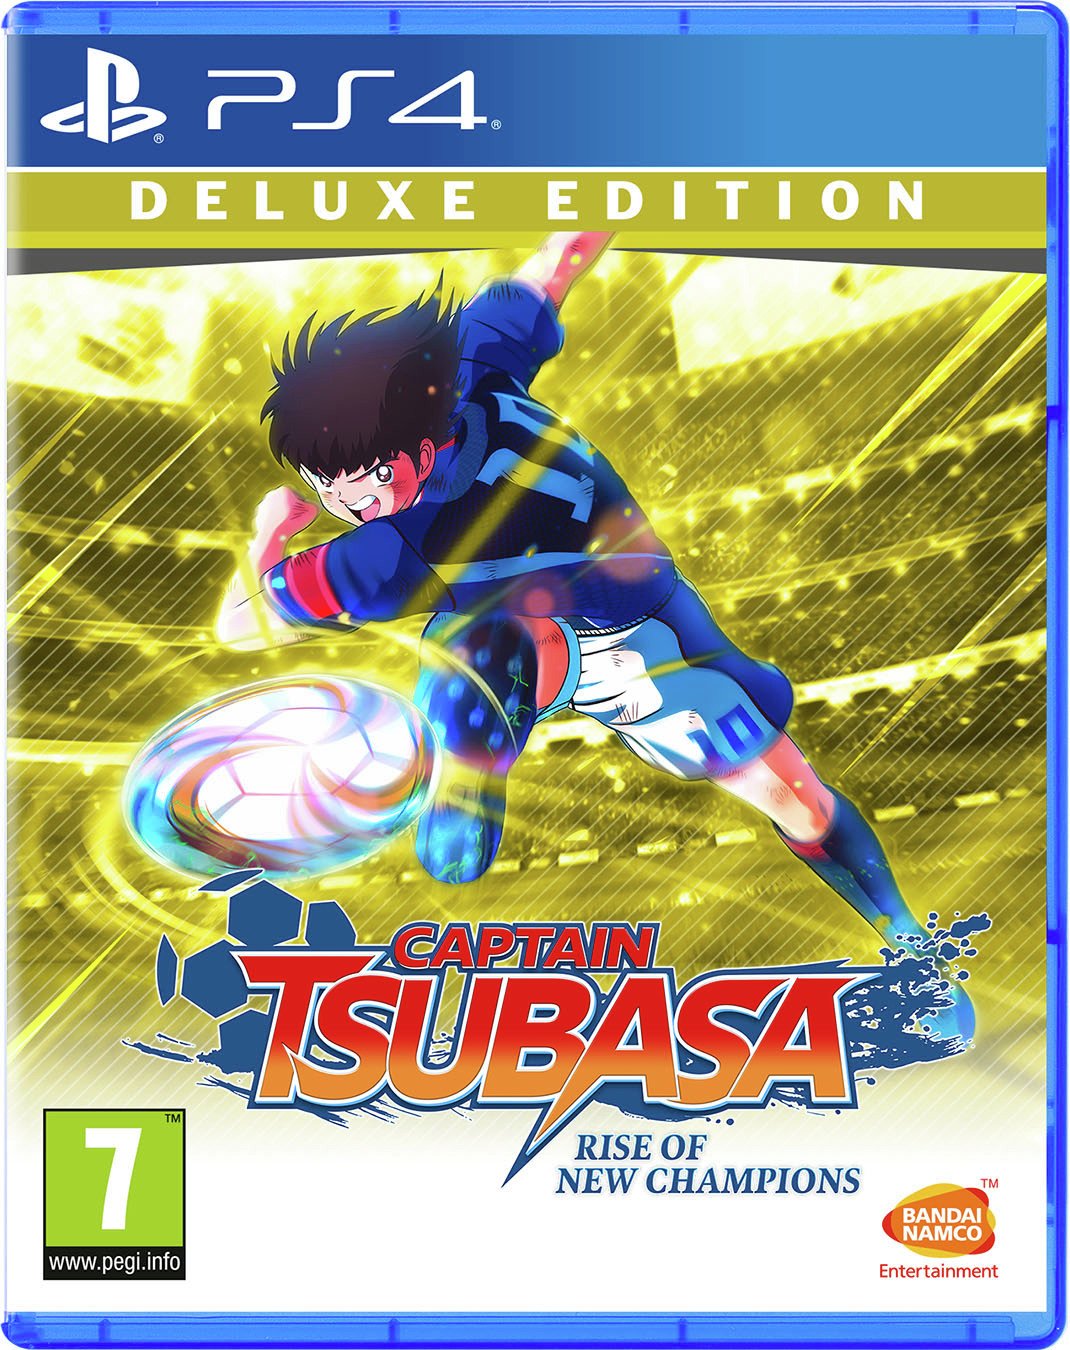 Captain Tsubasa Deluxe Edition PS4 Game Pre-Order Review